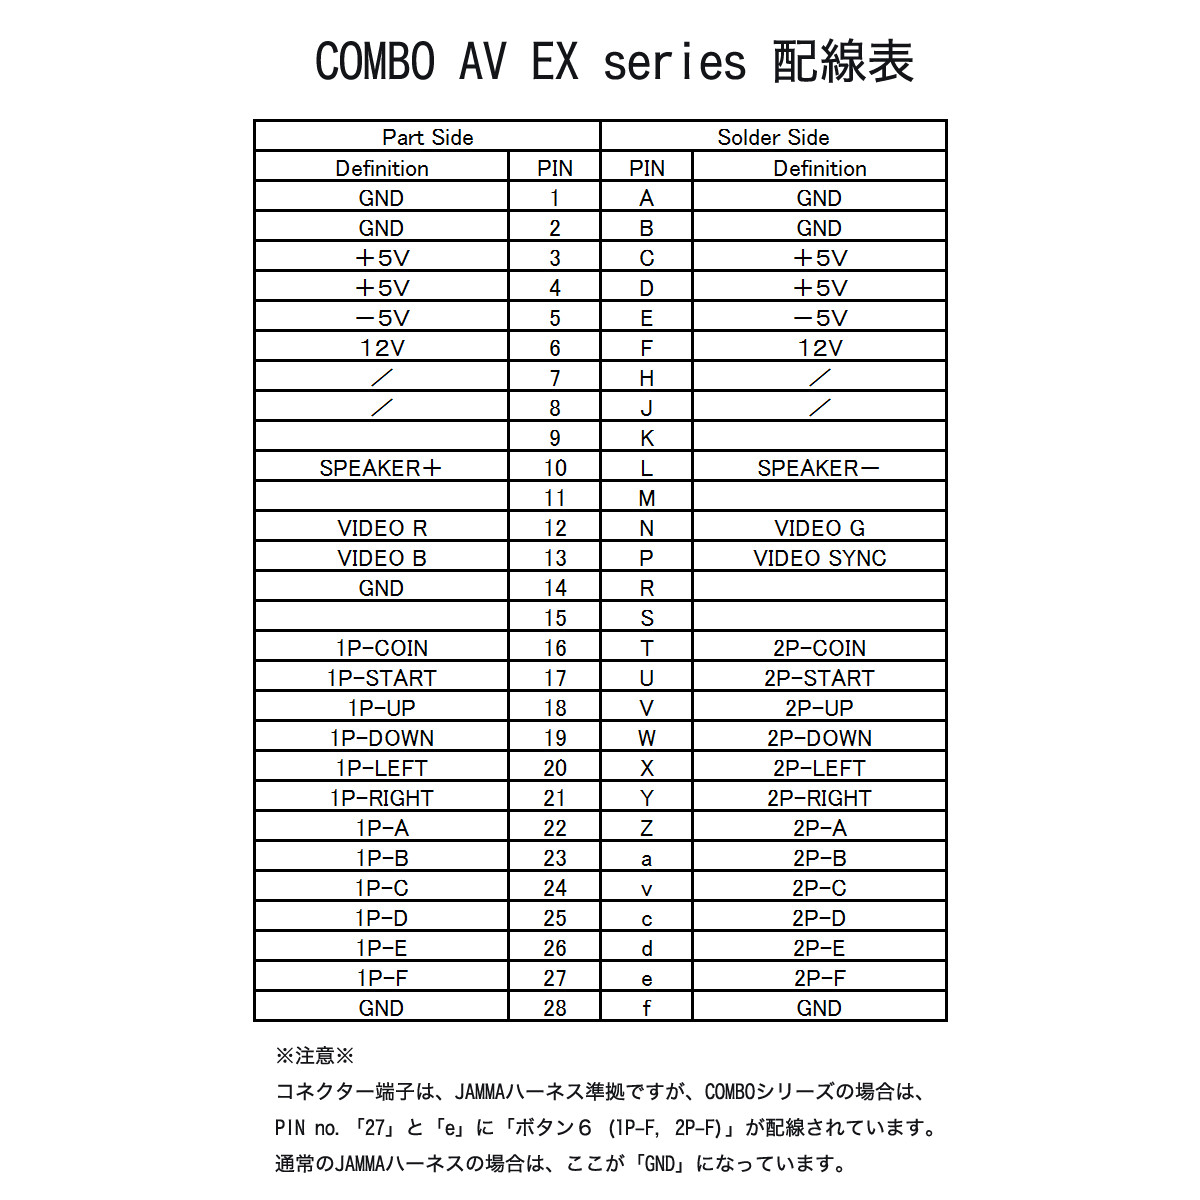 アーケードゲームコントロールボックス COMBO AV EX++ 【フルオプションパッケージ】